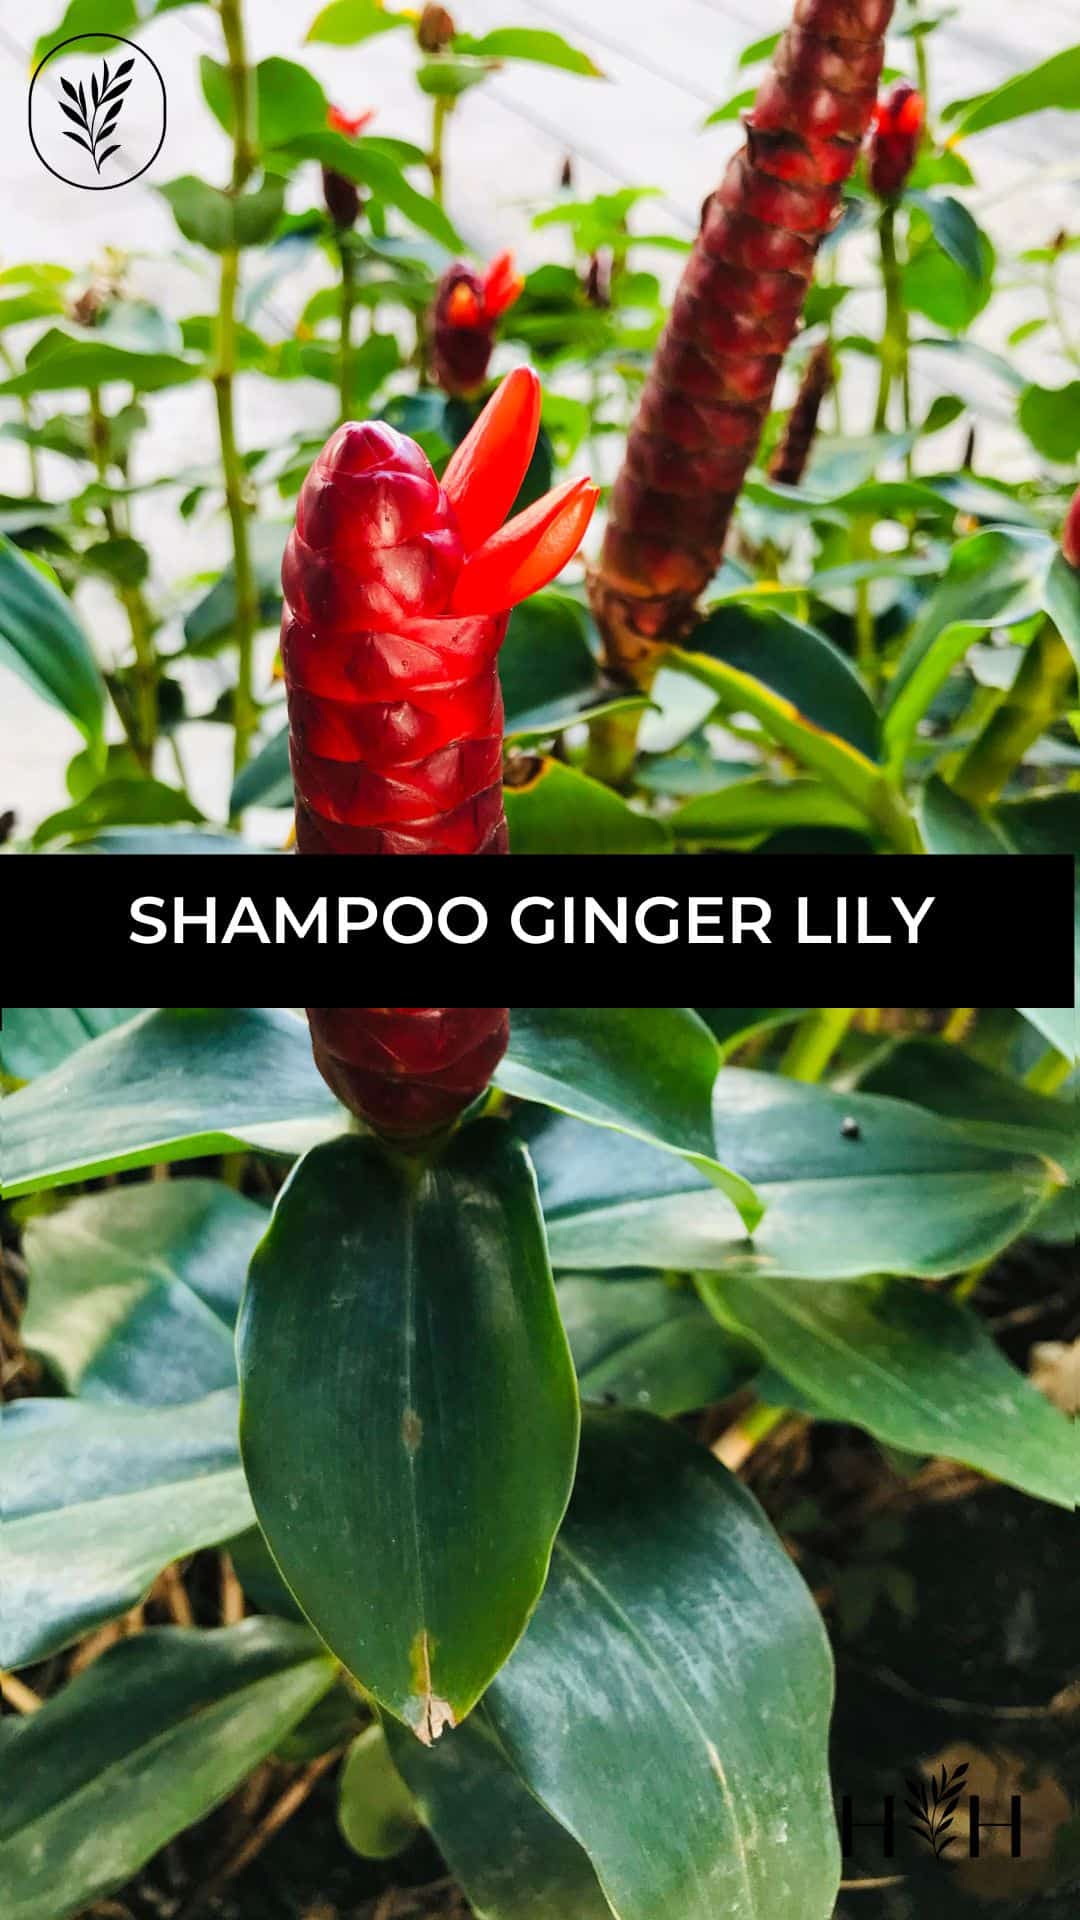 Shampoo ginger lily via @home4theharvest